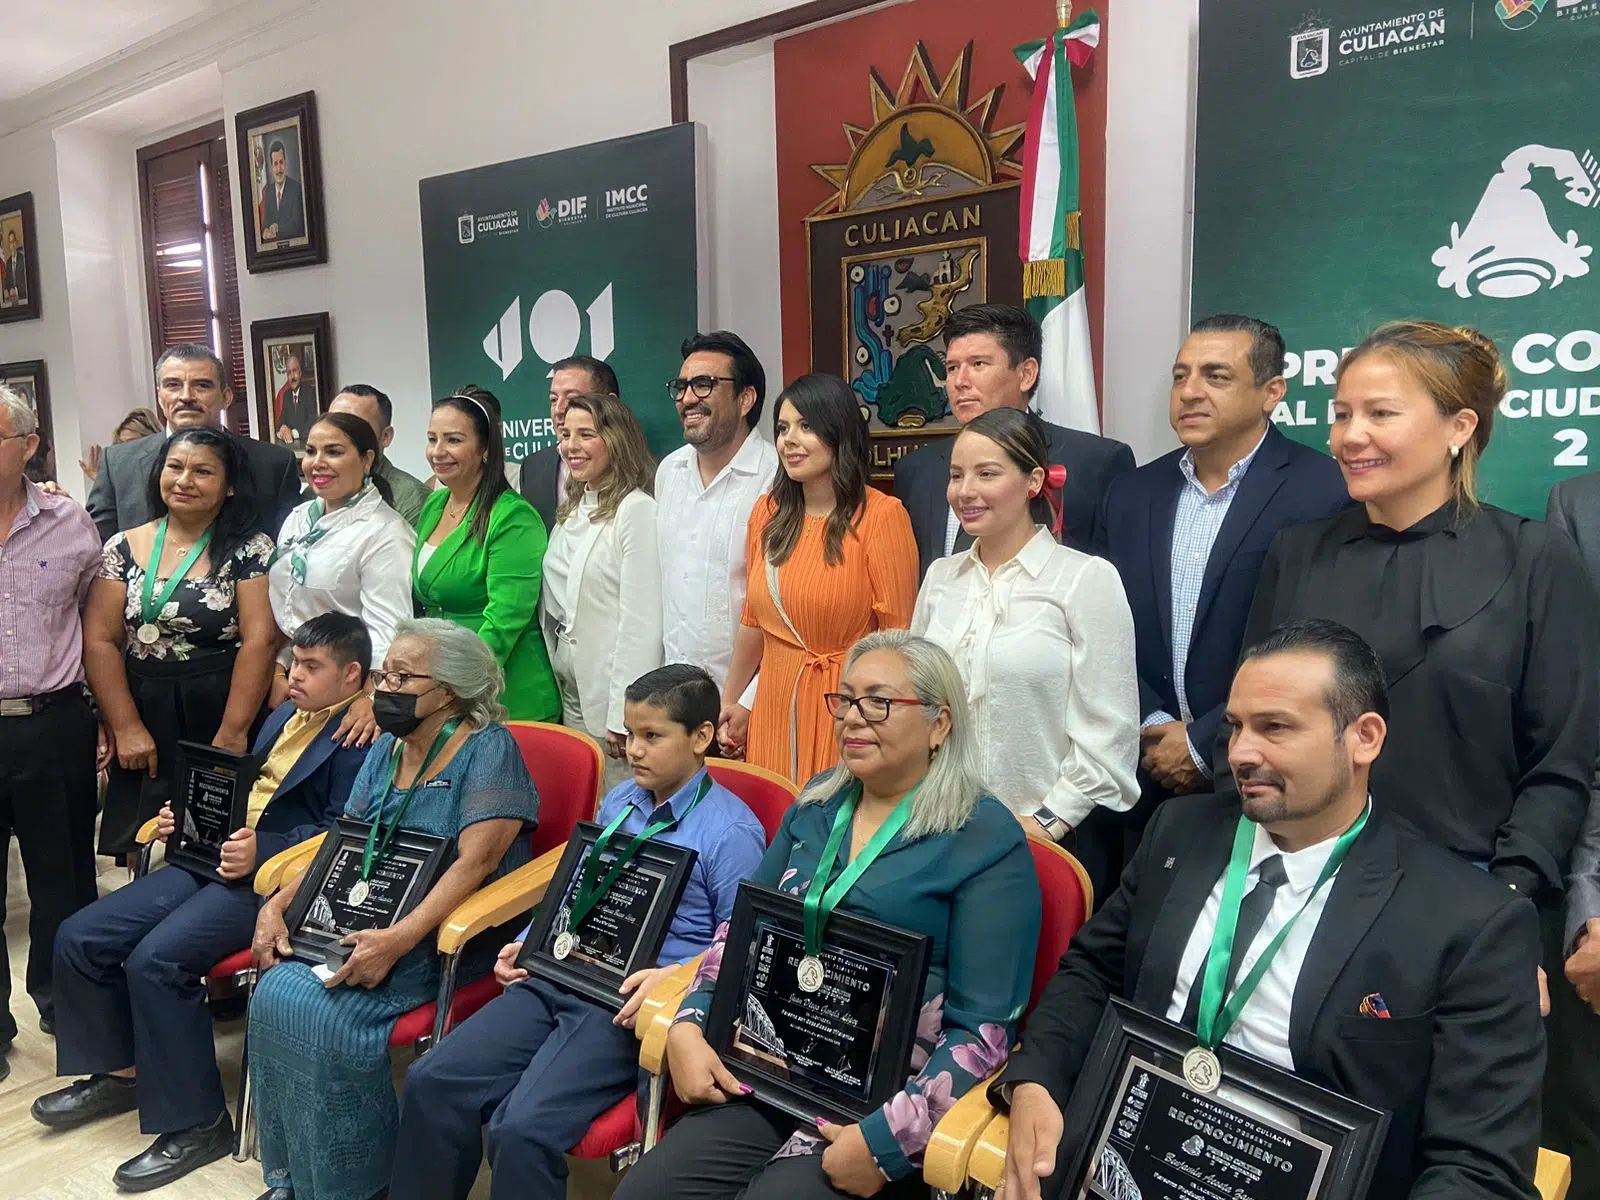 ¡Por ser ciudadanos ejemplares! Reciben el premio Coltzin cinco culiacanenses